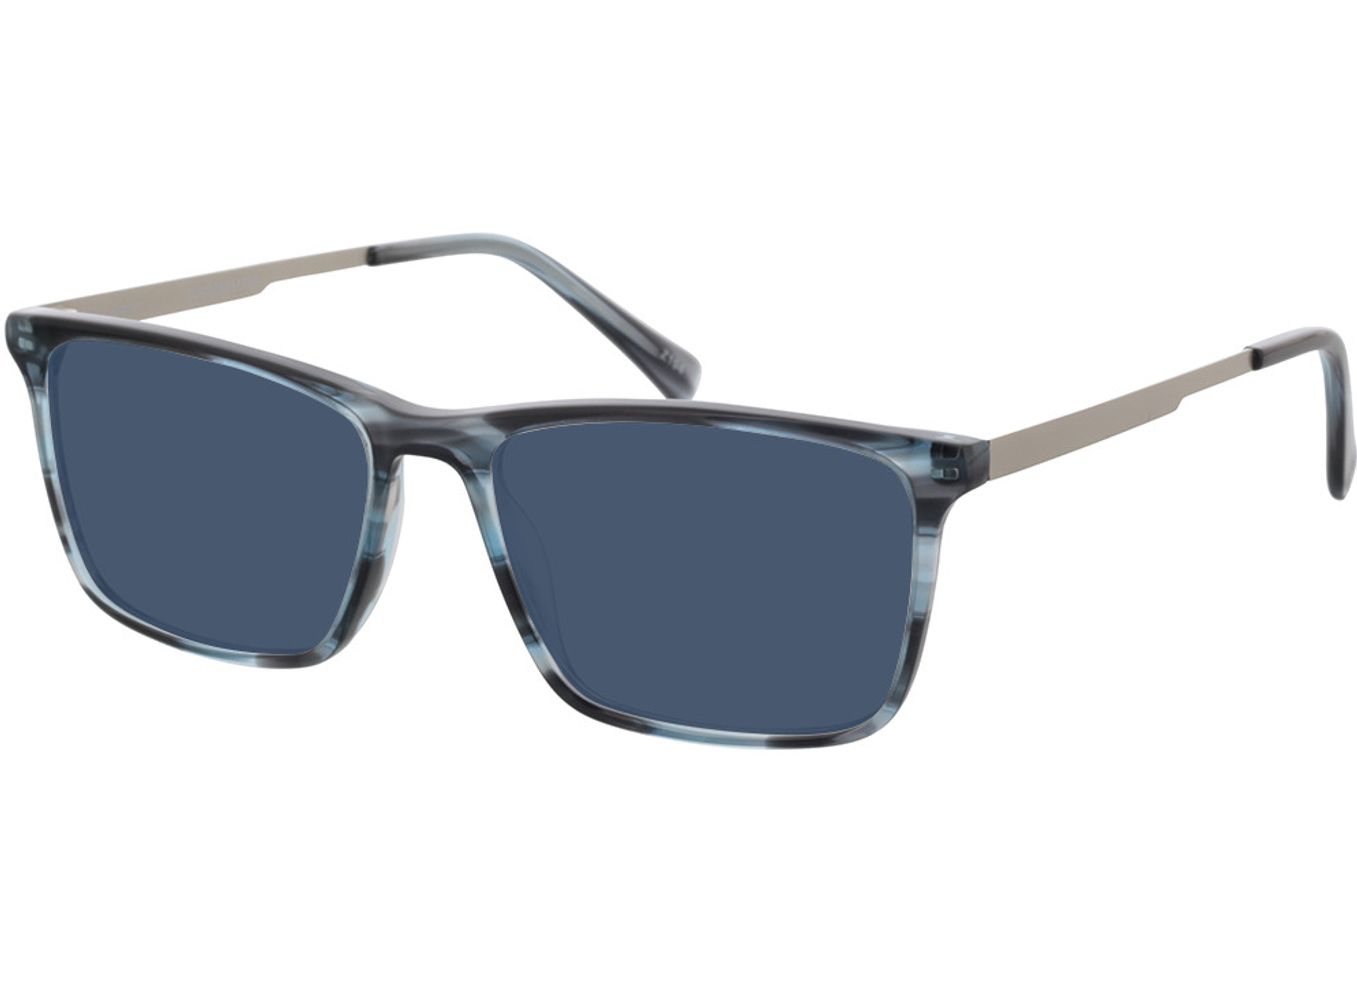 Aaron - blau/silber Sonnenbrille ohne Sehstärke, Vollrand, Rechteckig von Brille24 Collection